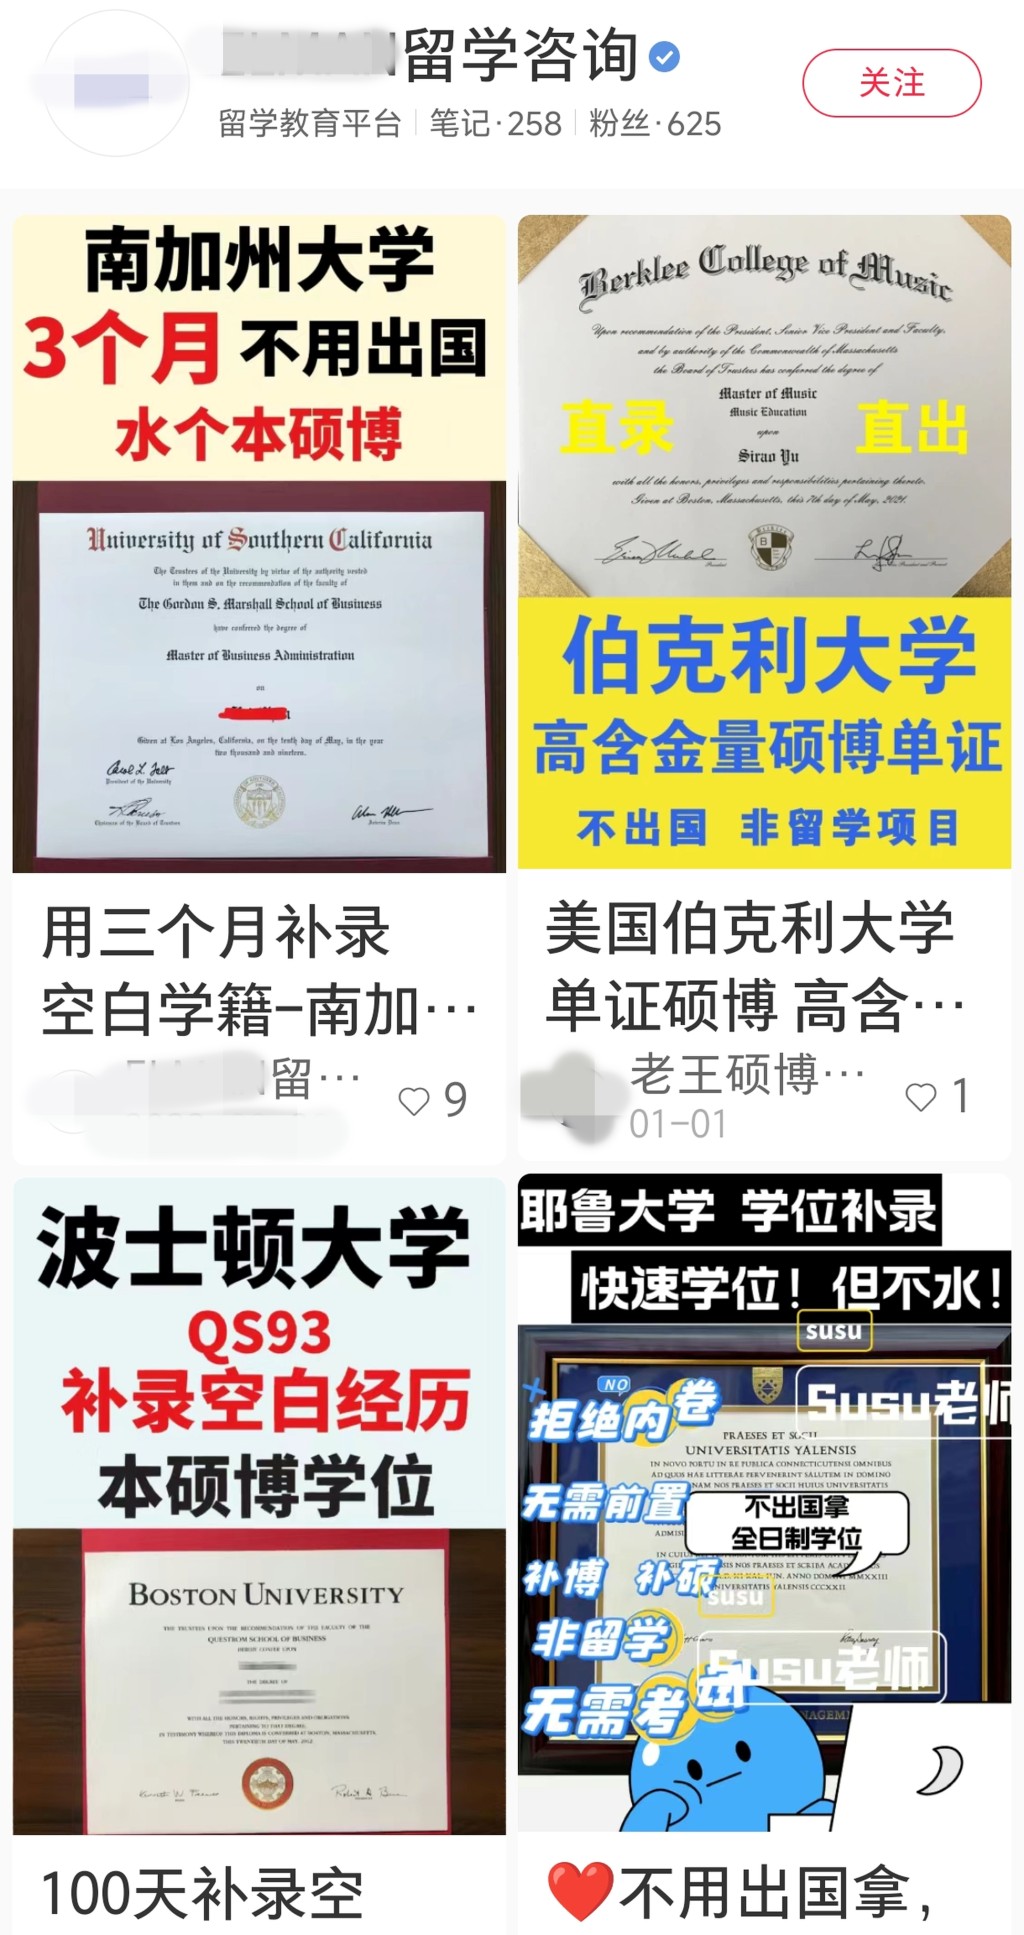 社交媒體「小紅書」可見多個聲稱提供「學籍補錄」的貼文，可協助客人直接取得外國名牌大學的學位。 網上圖片